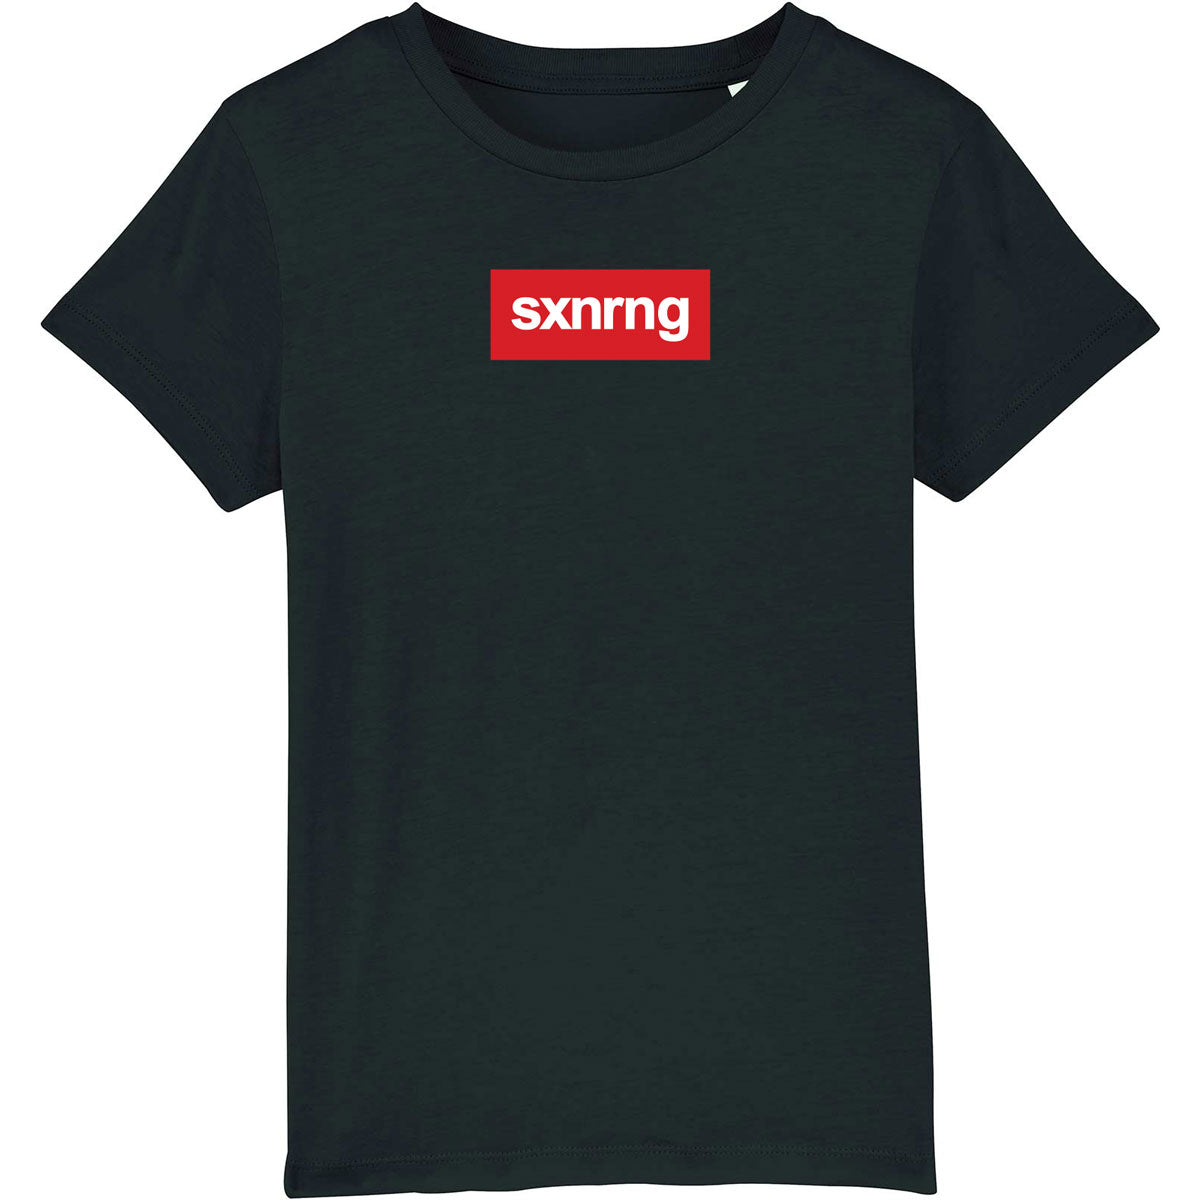 Noale SXNRNG KIDS T-Shirt